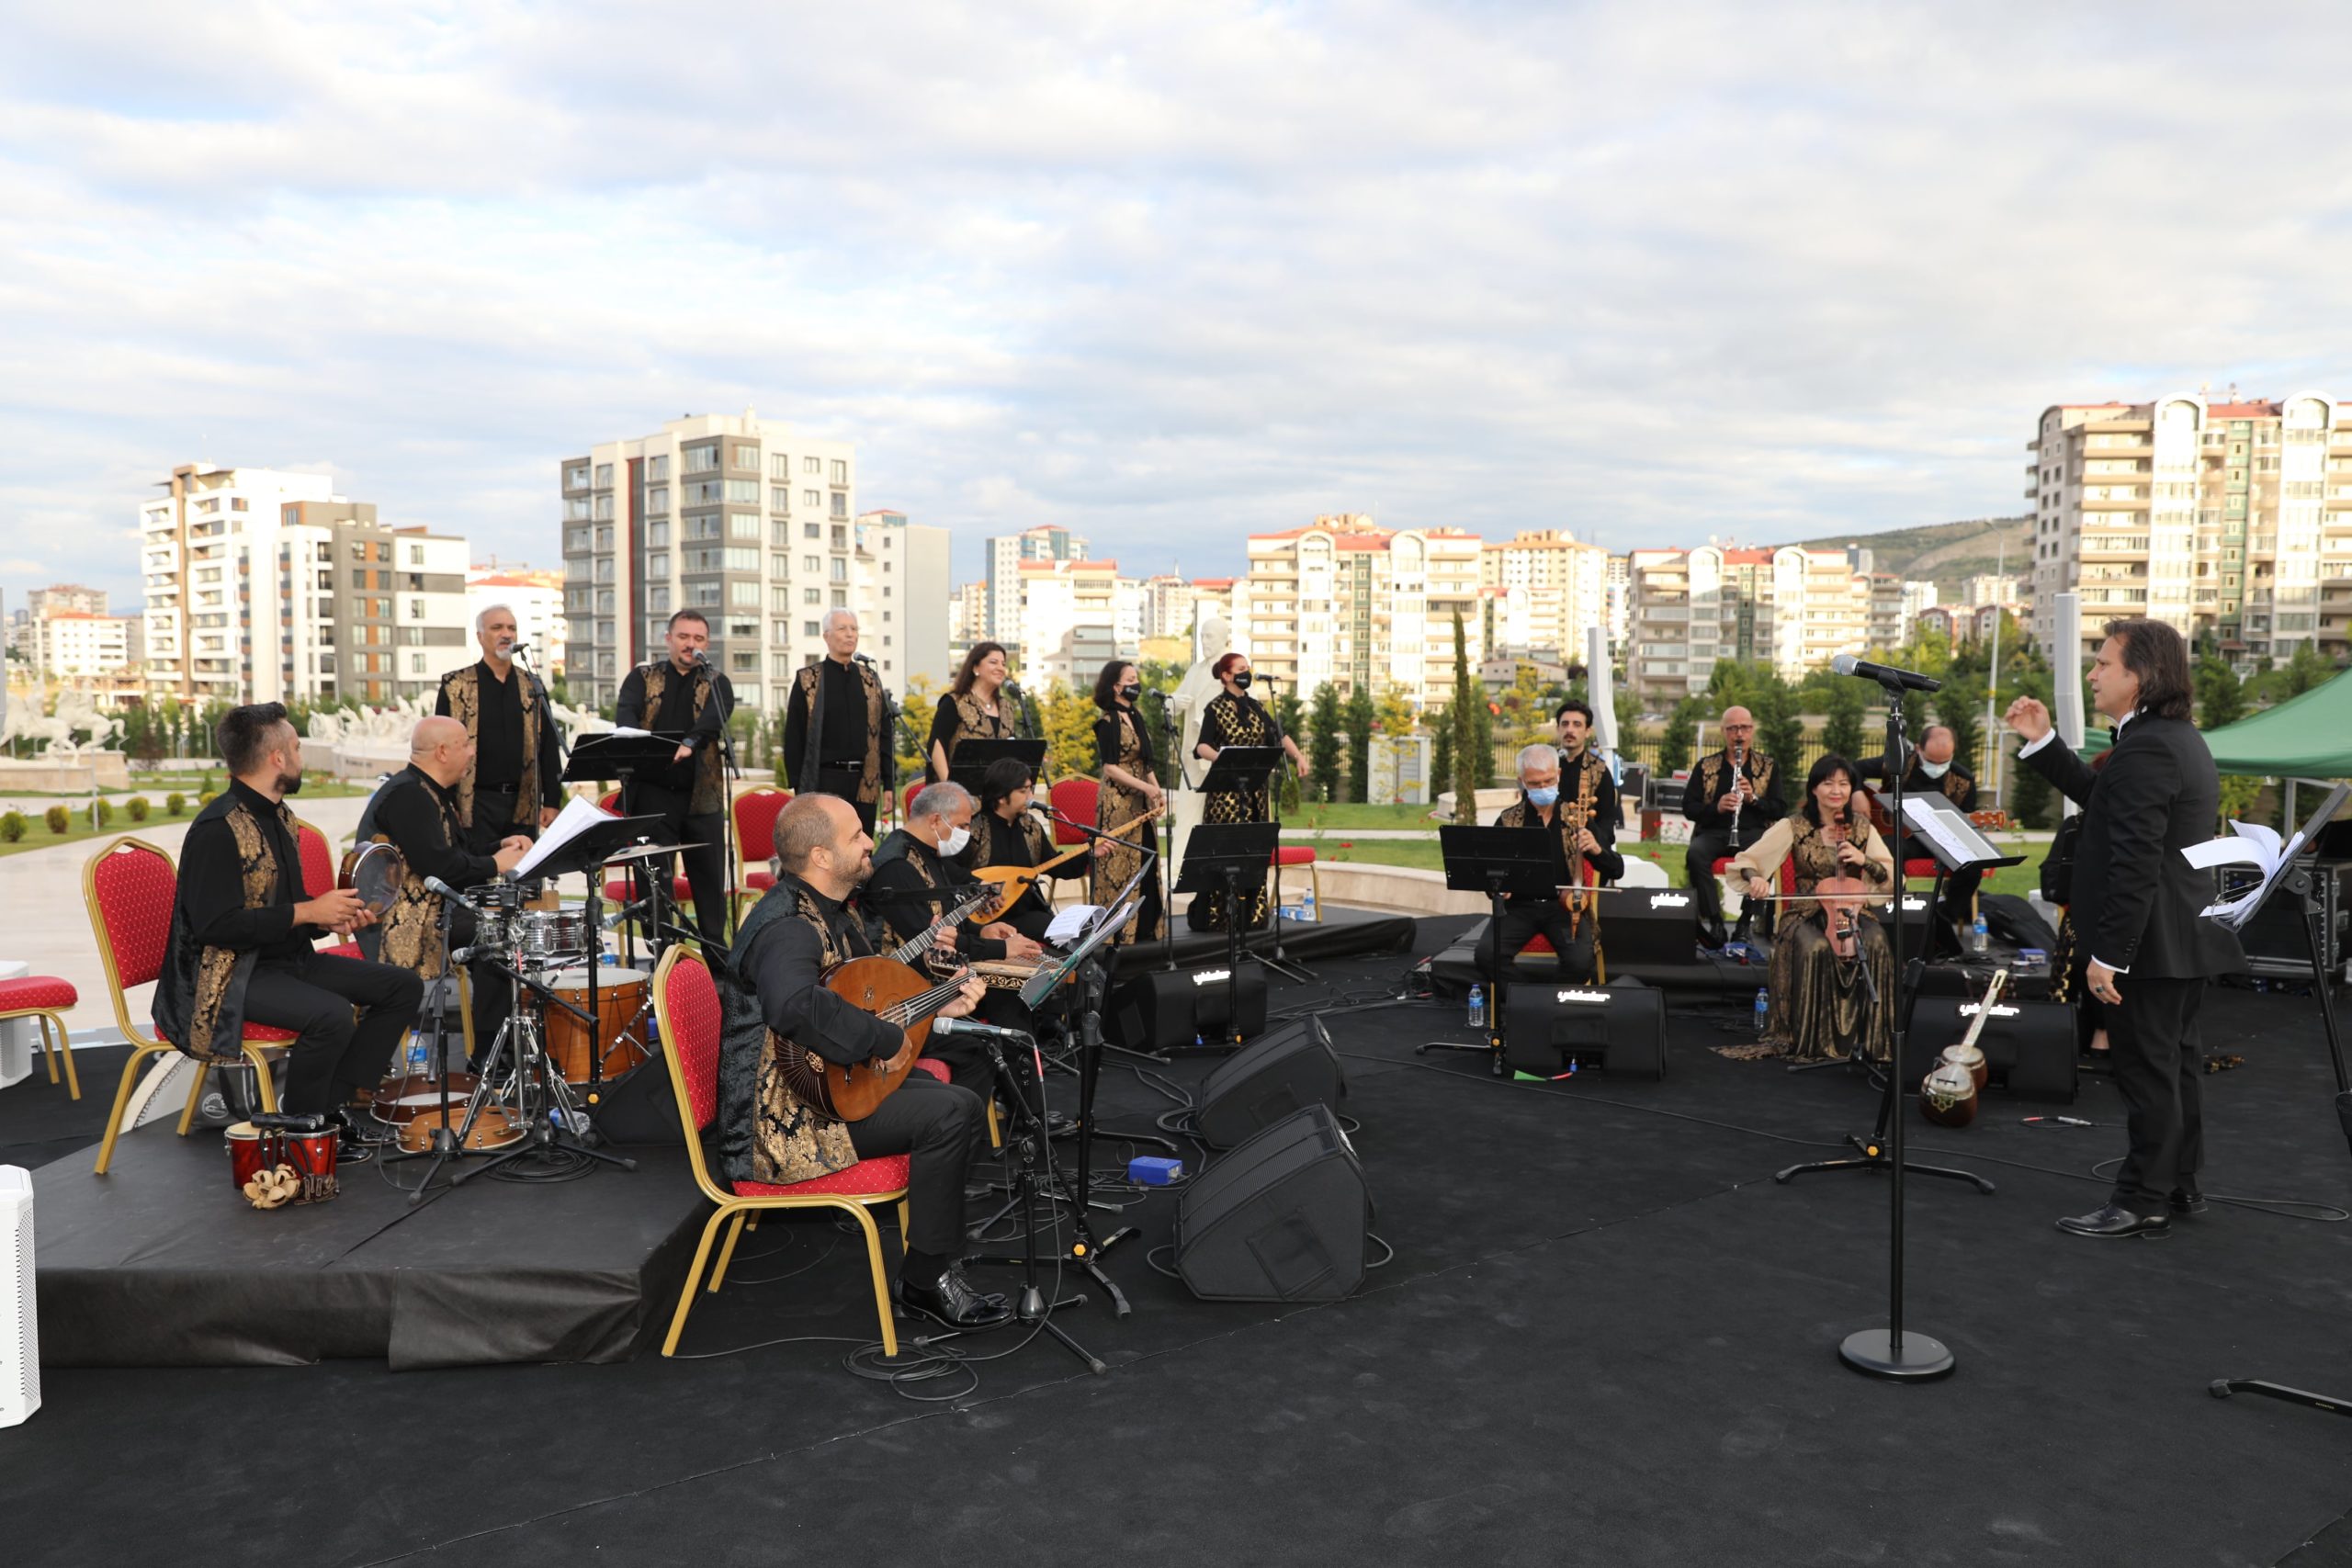  Etimesgut’ta Verilen Konserde Türk Dünyası Ezgileri Yankılandı